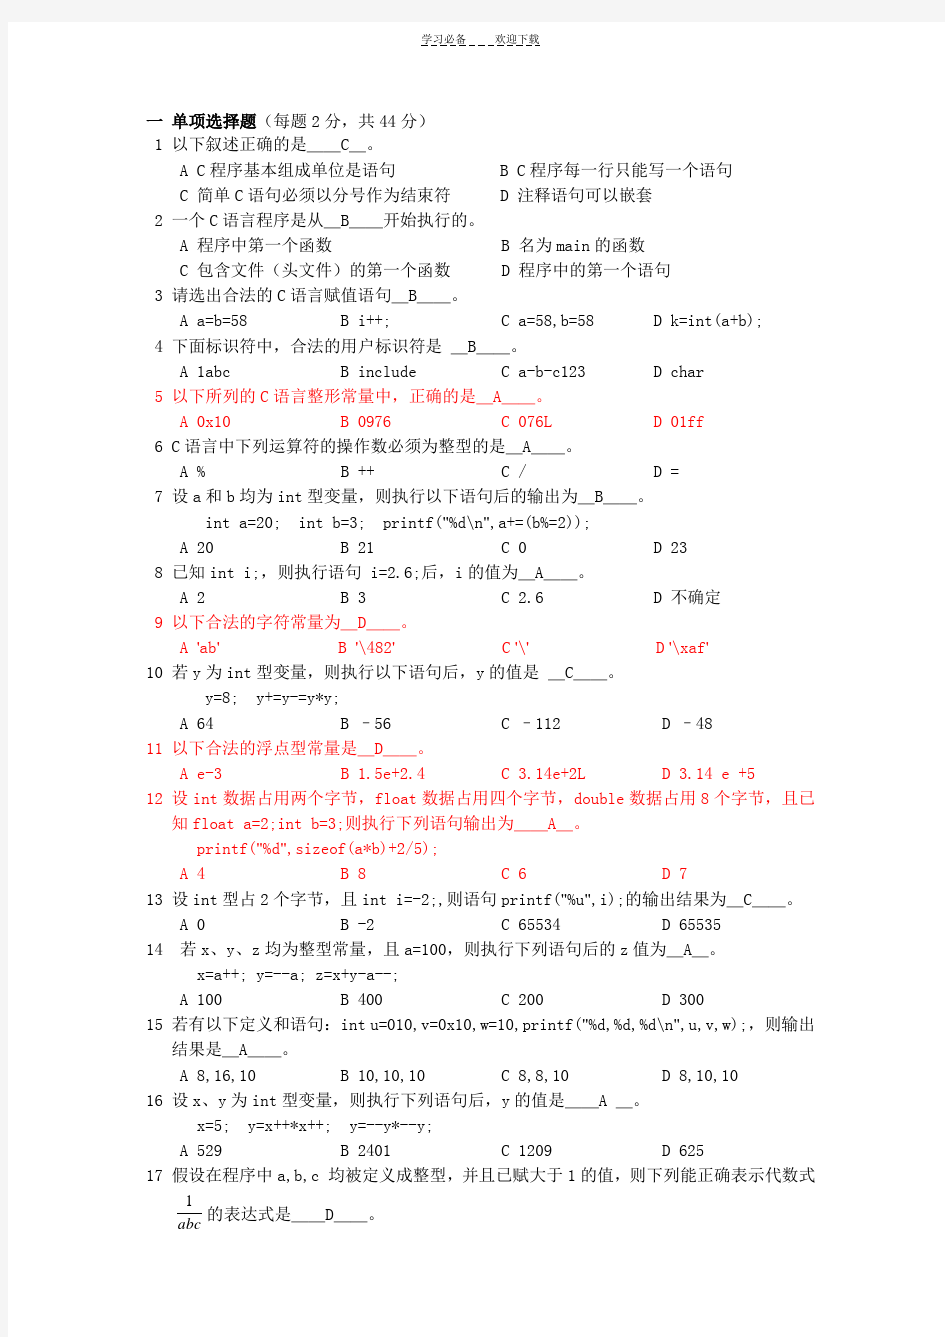 桂林电子科技大学C语言程序设计习题集及答案